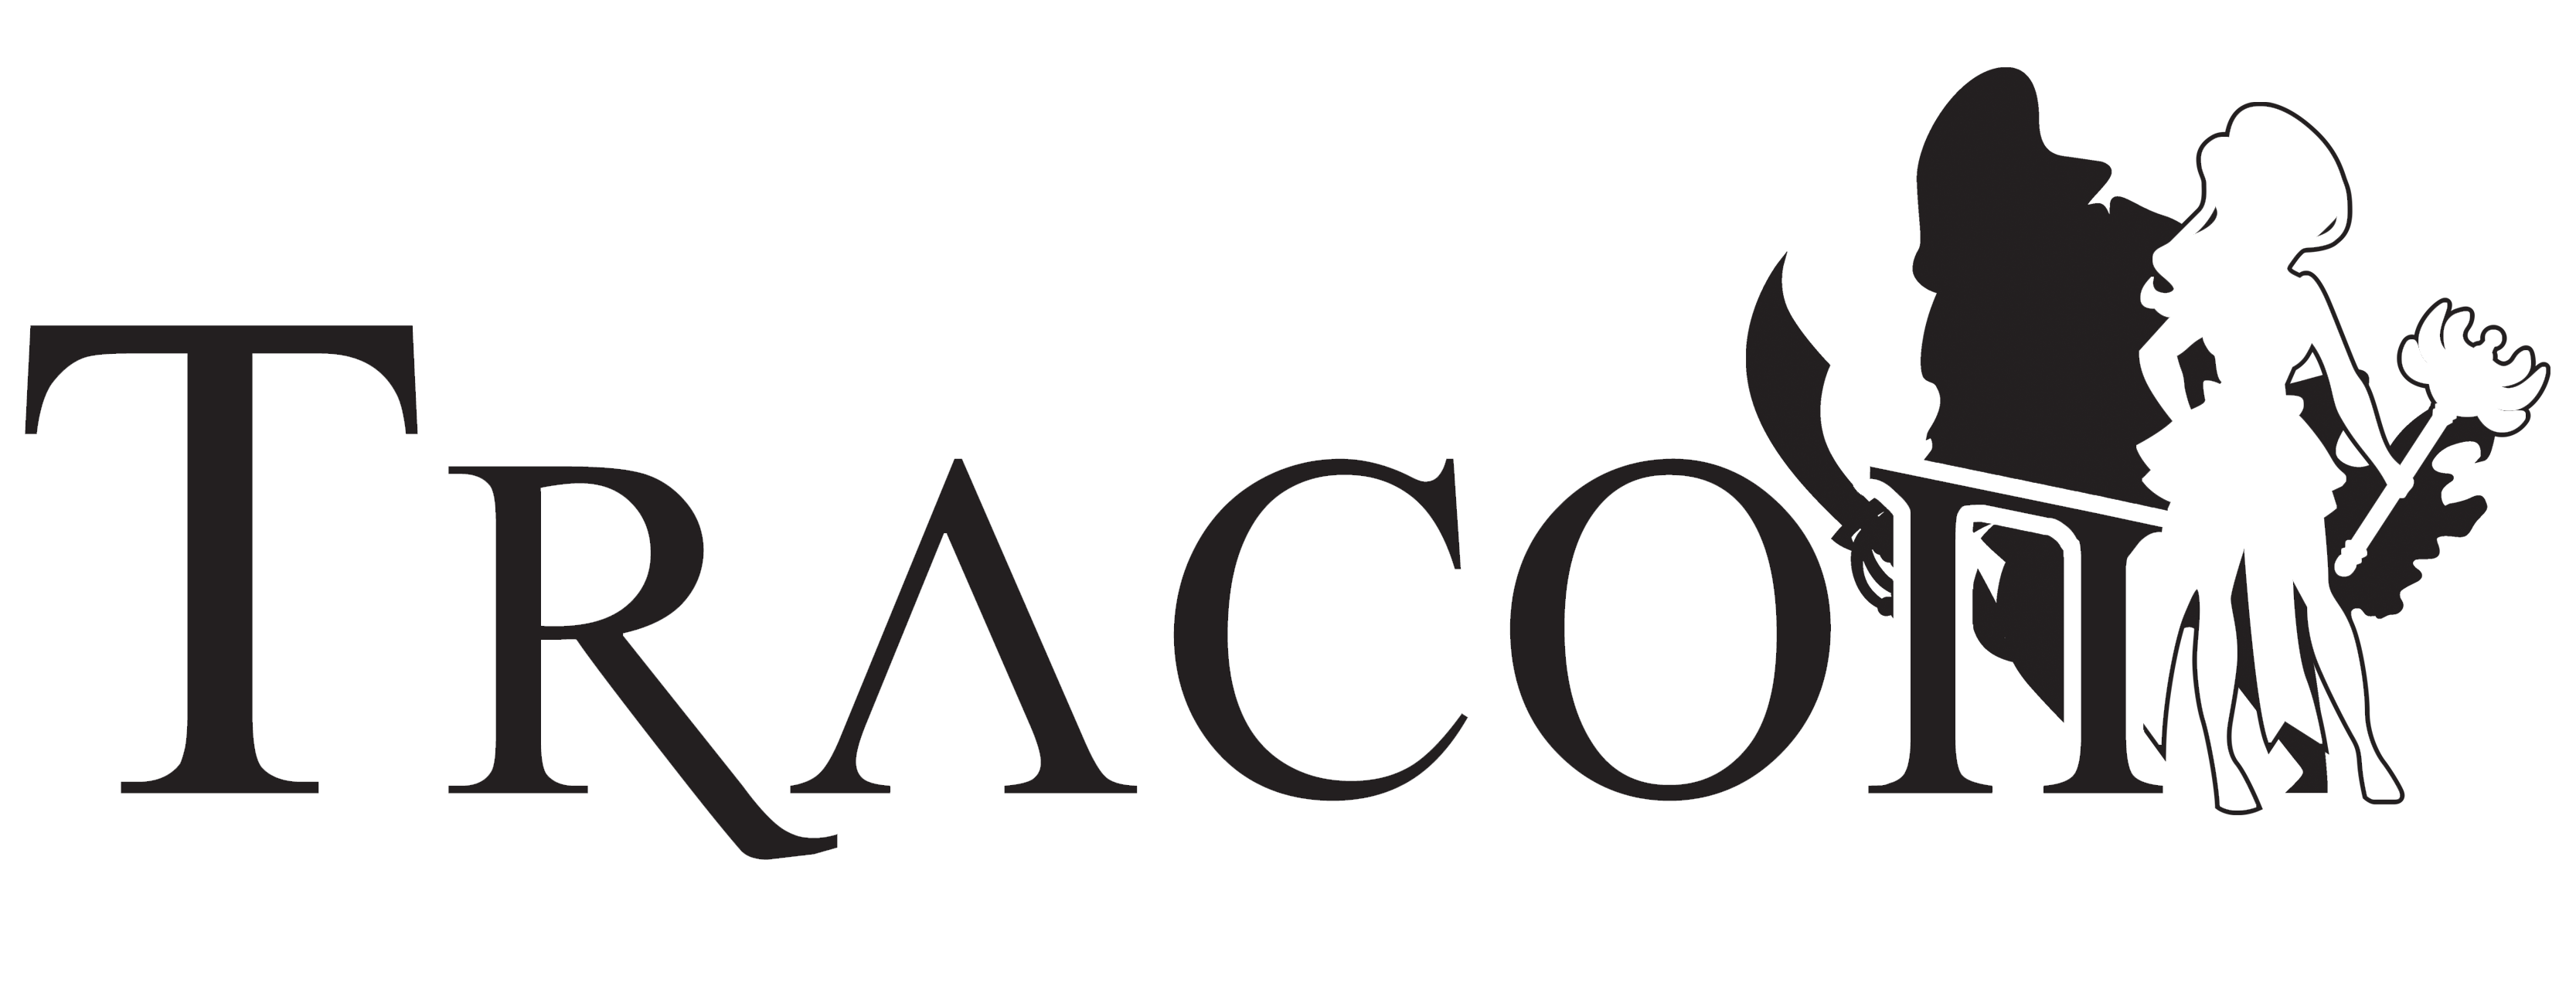 Tracon ry. logo